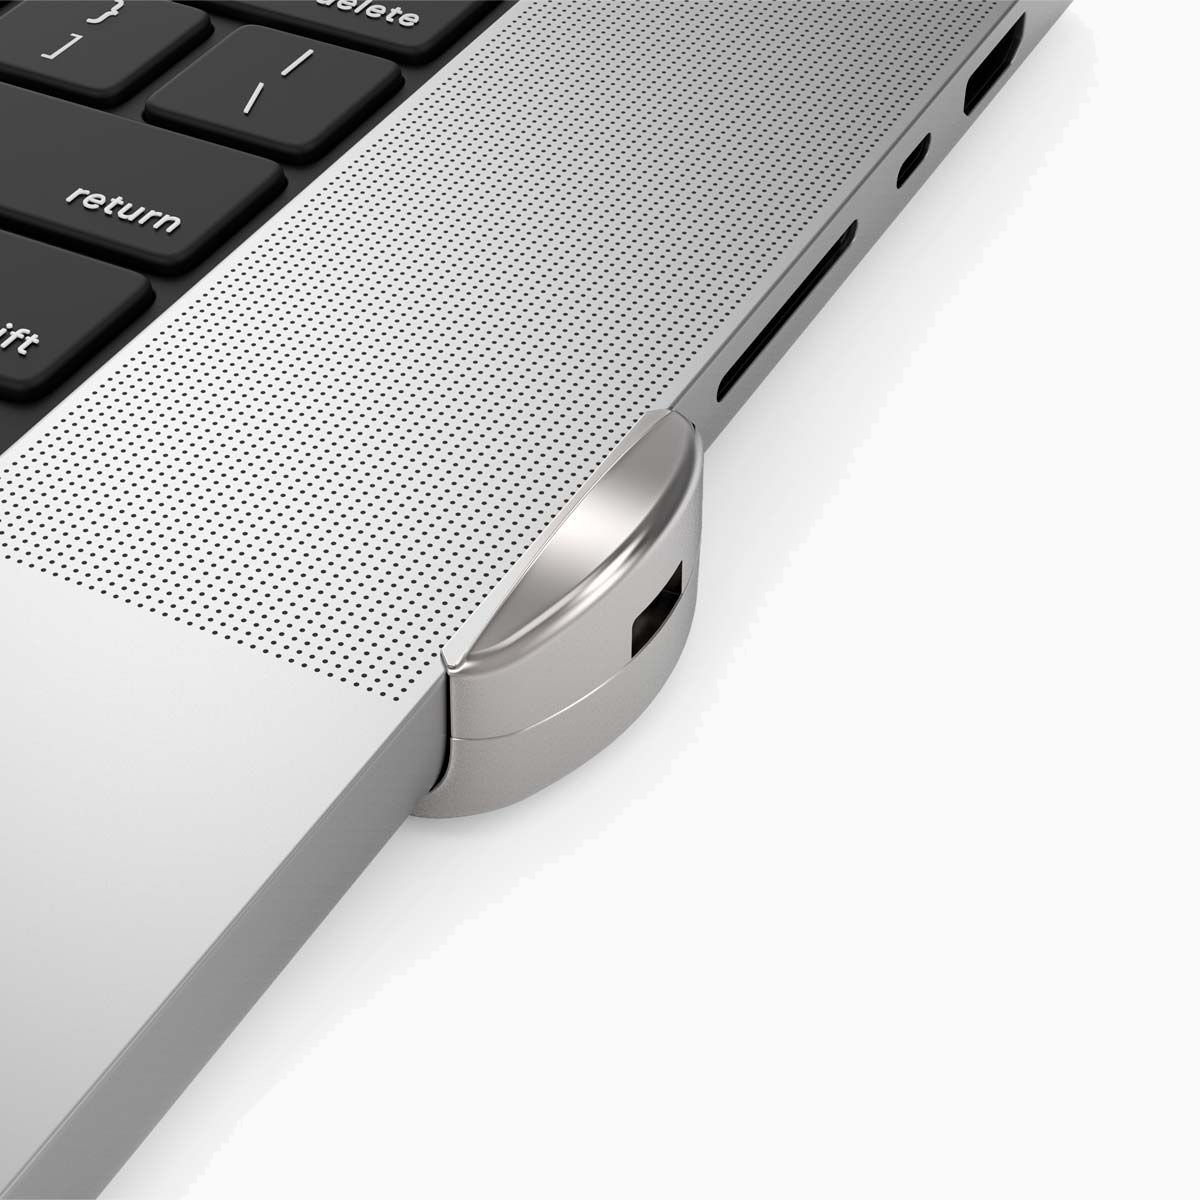 Maclocks MacBook Pro 16 Lock – The Ledge